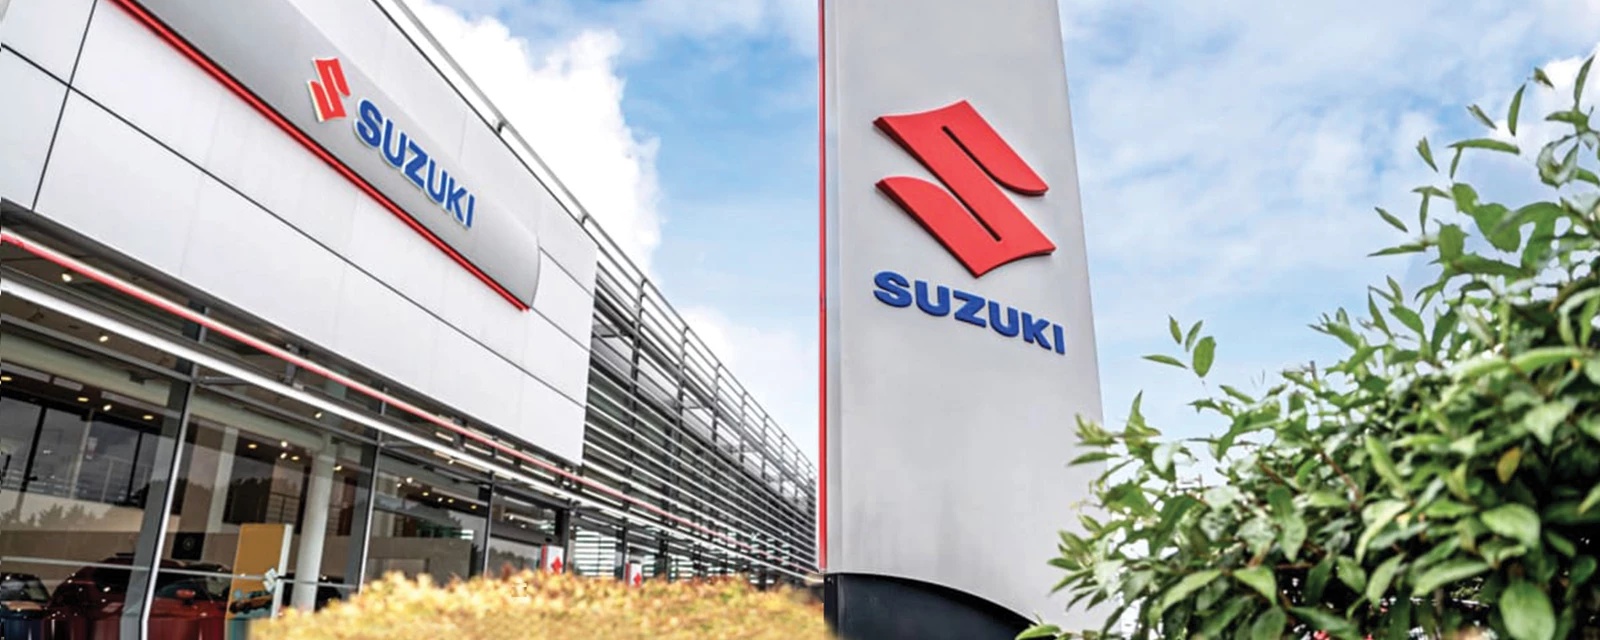 Suzuki Dealership